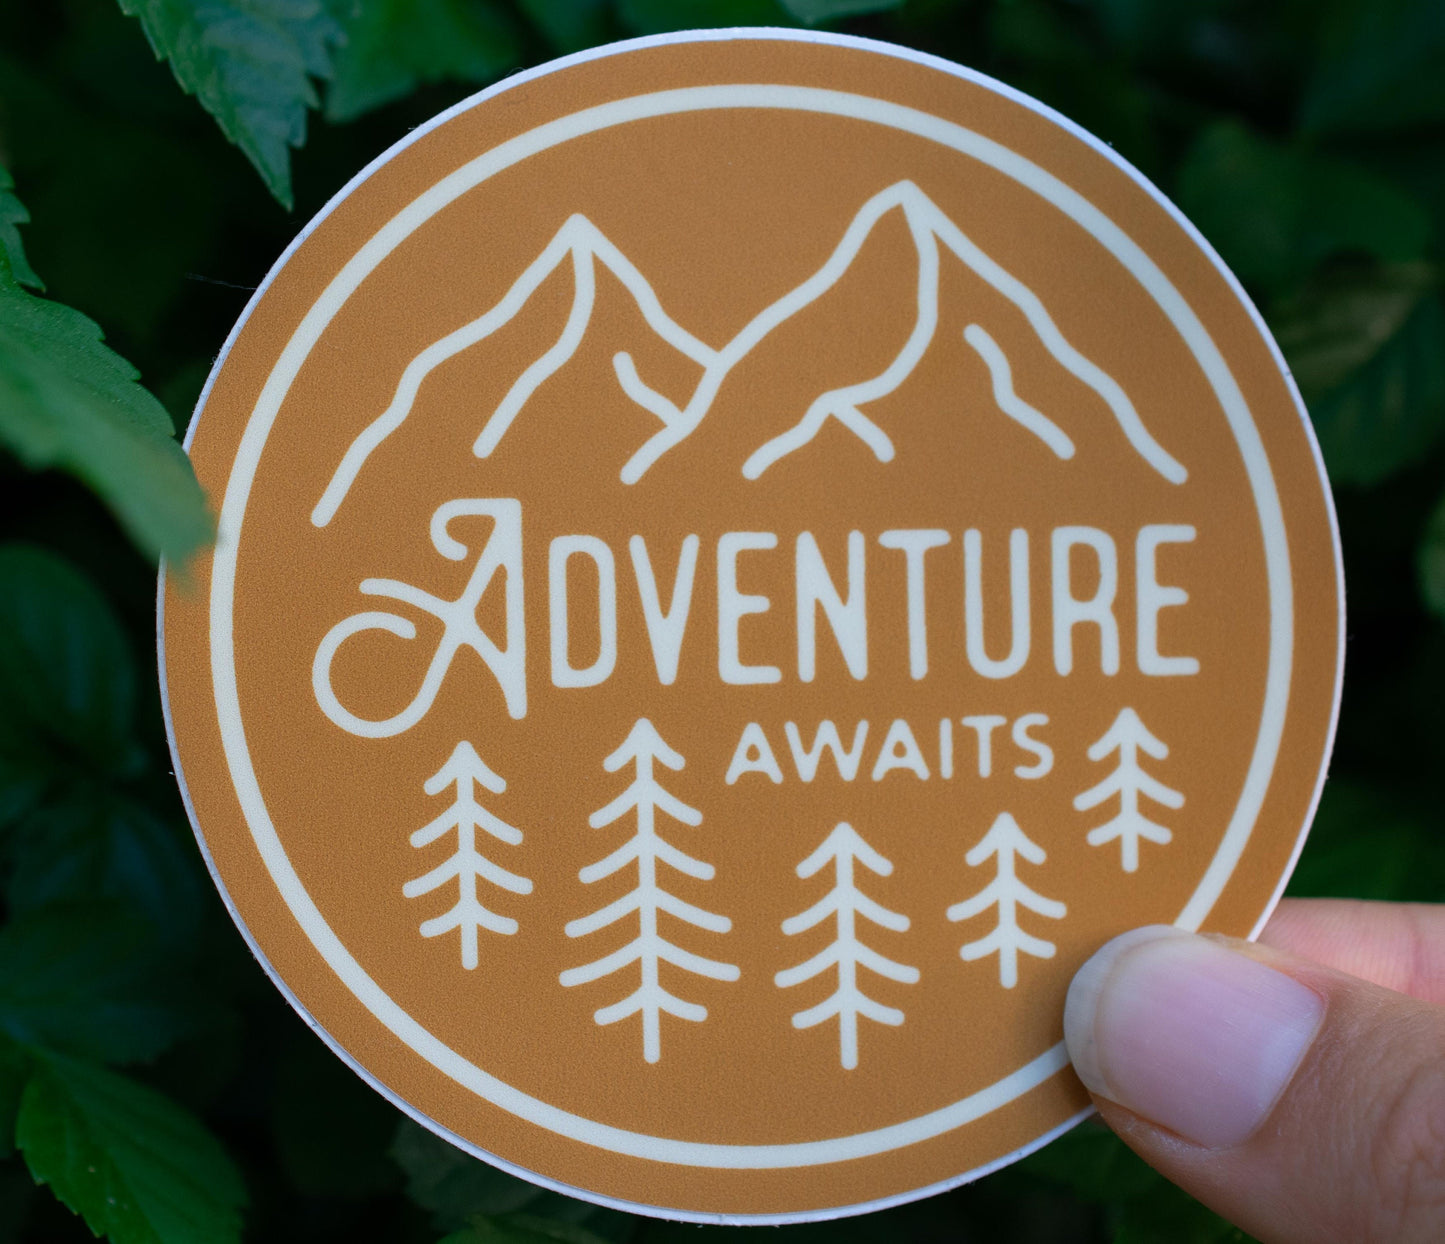 Orange Adventure Awaits Sticker